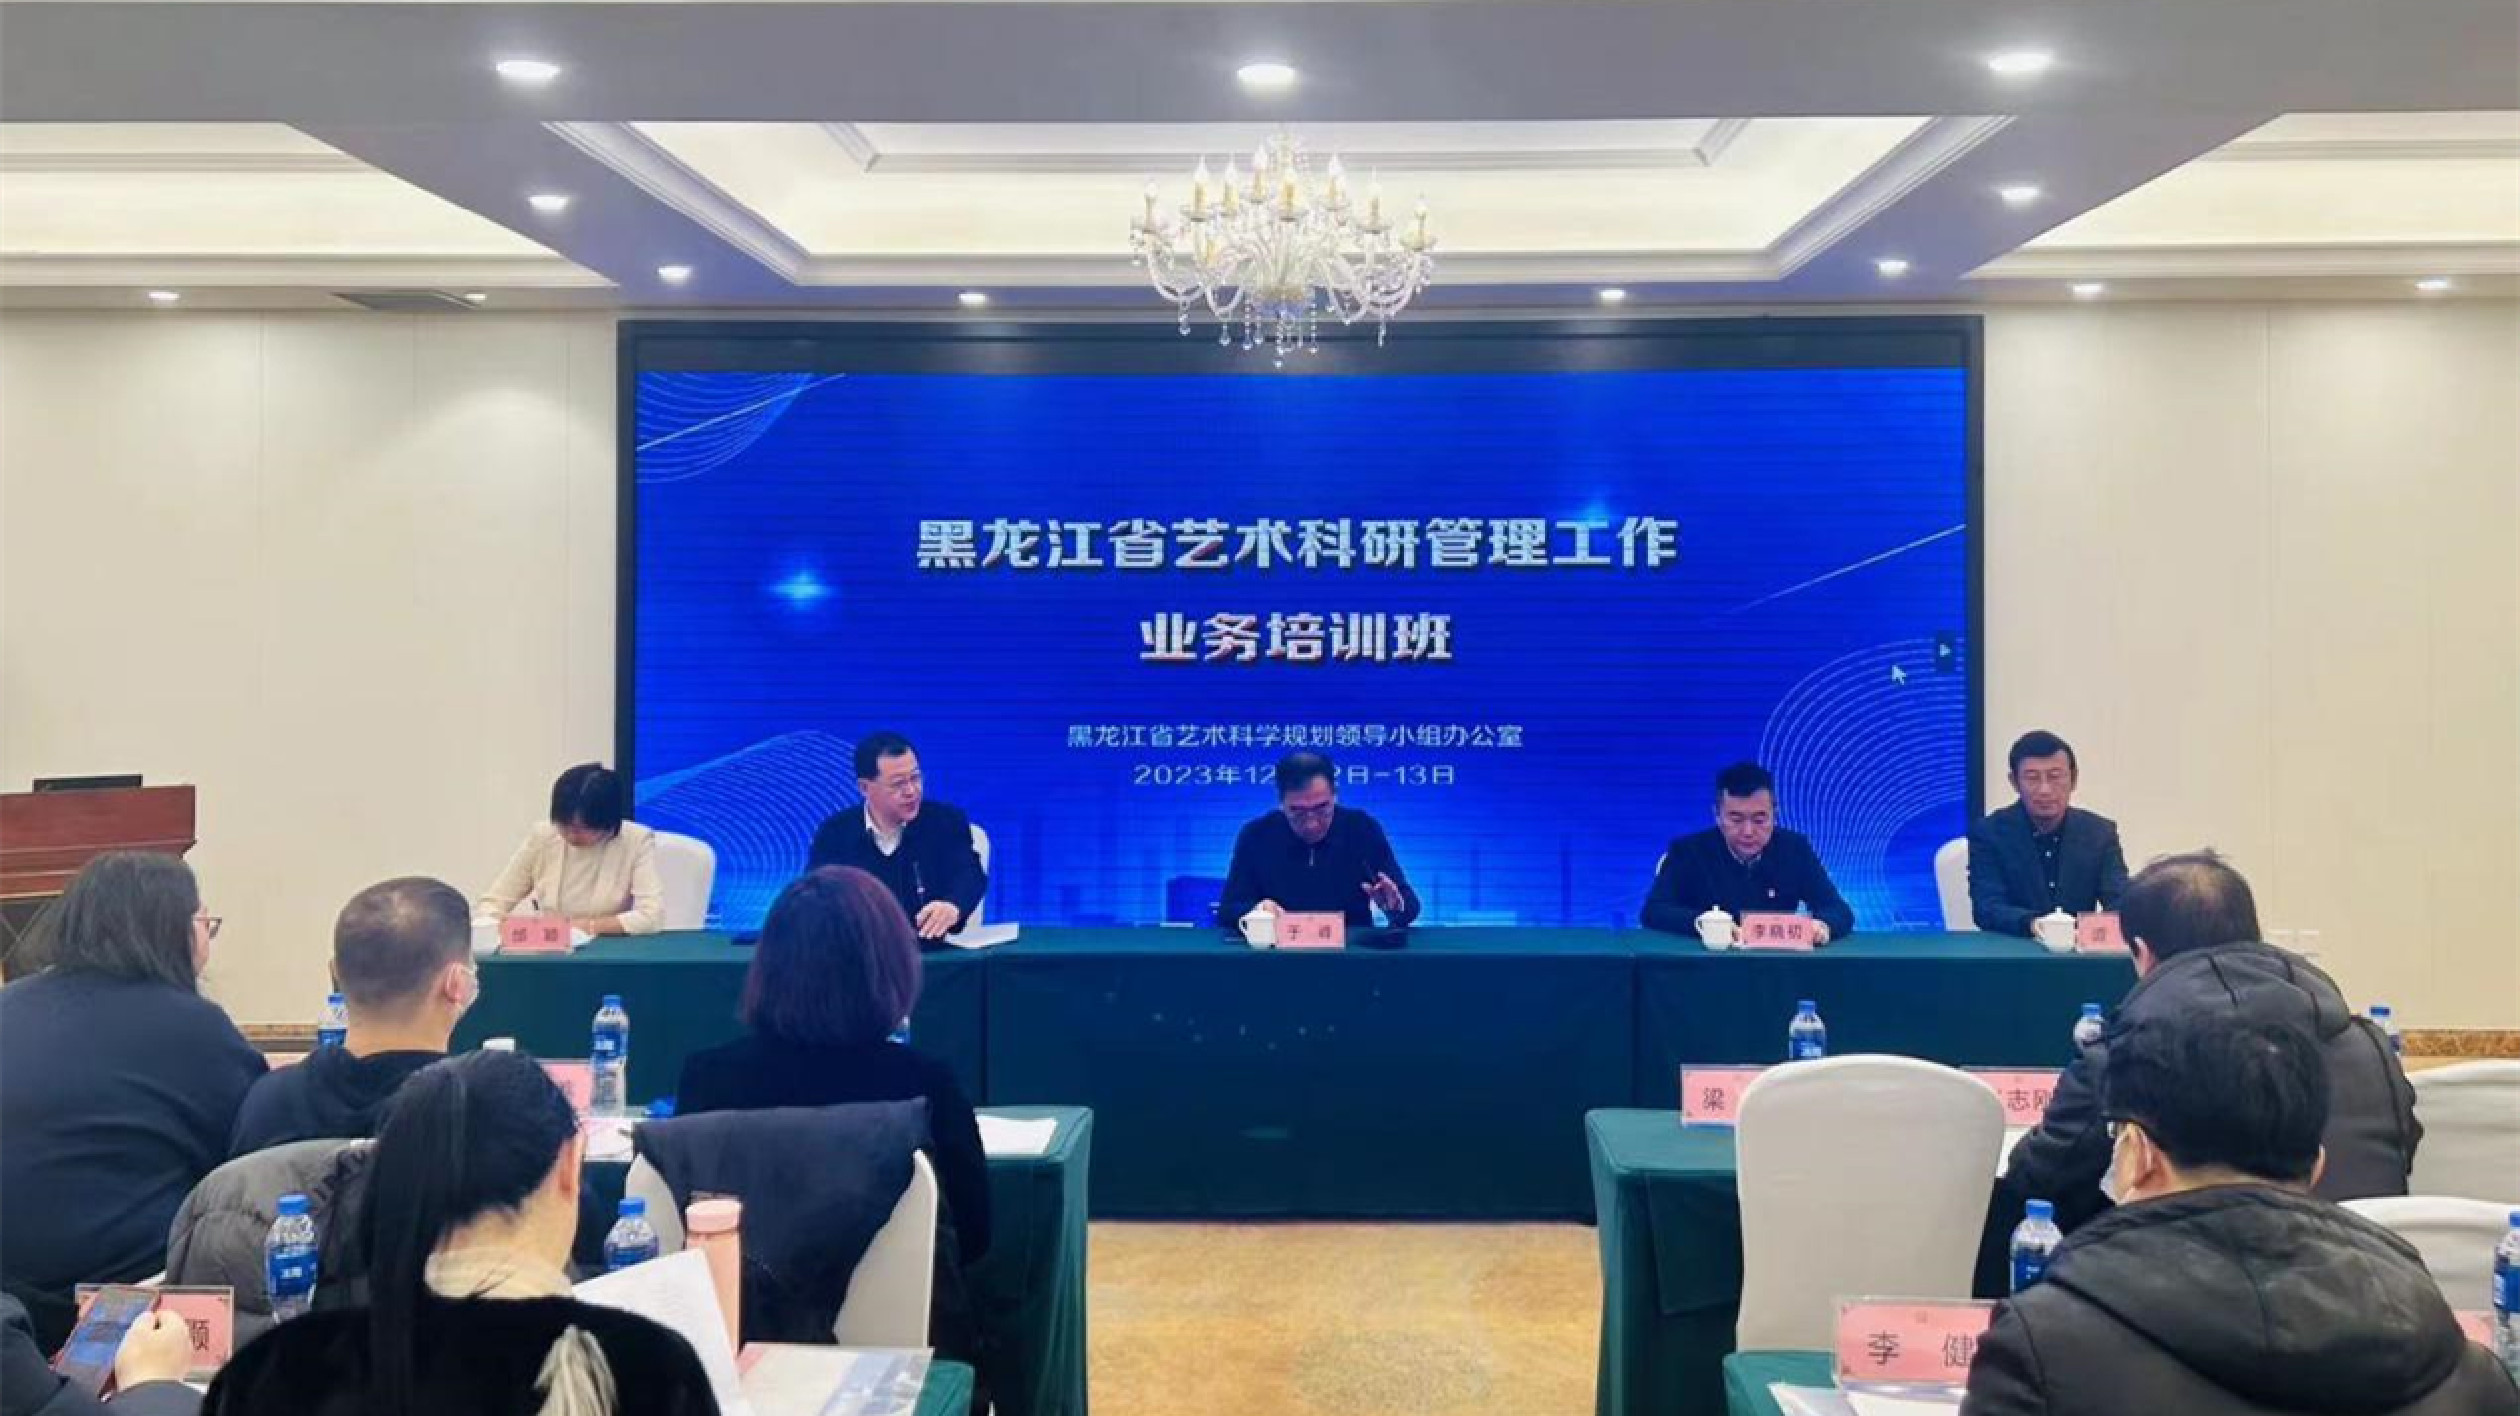 黑龍江省藝術科學規劃領導小組舉辦全省藝術科研管理工作業務培訓班